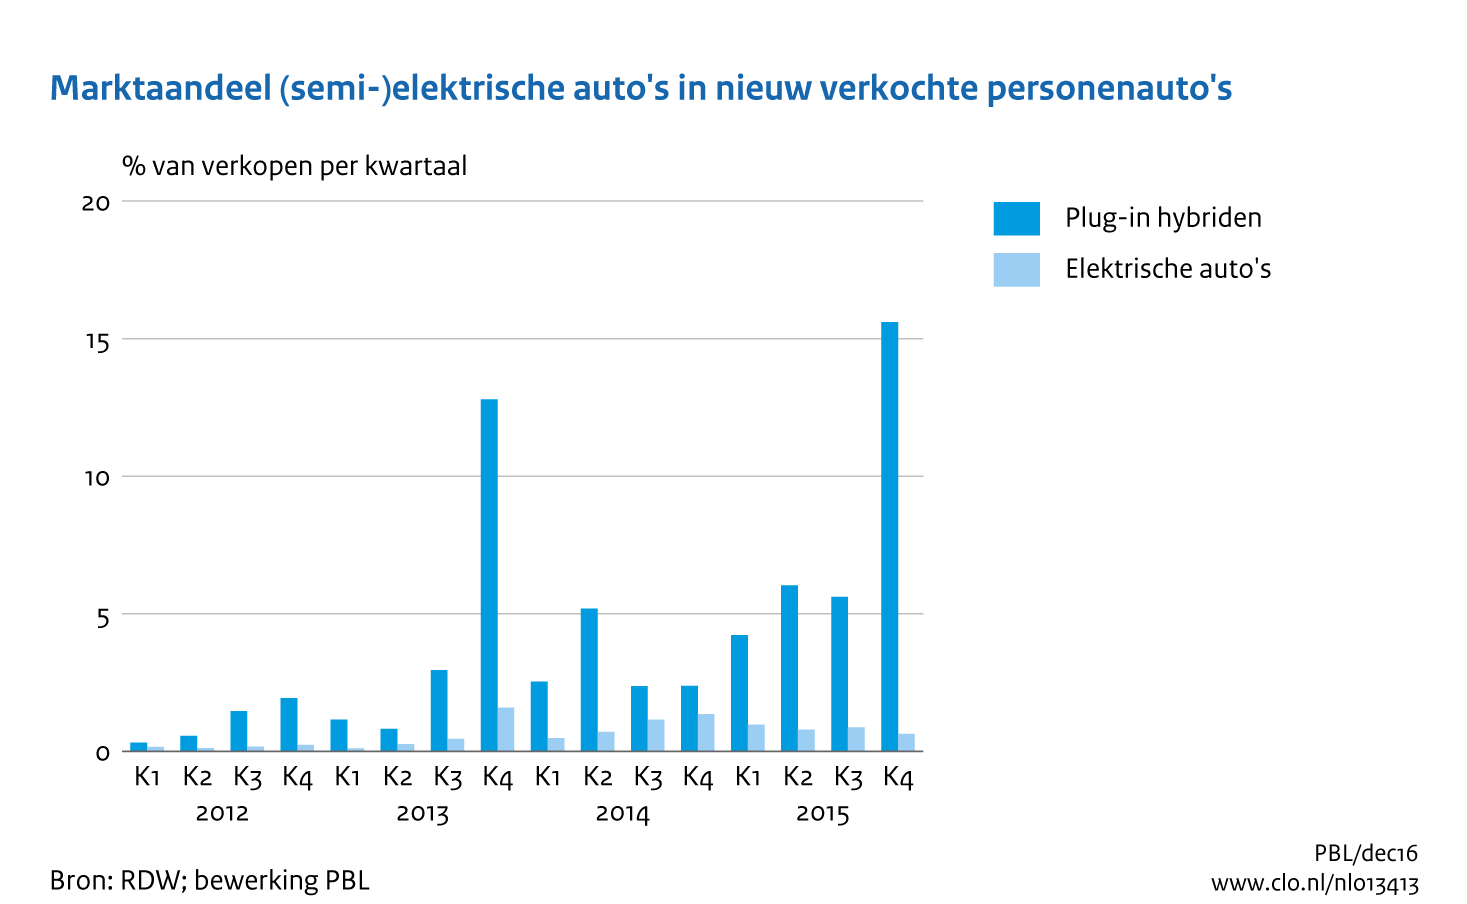 Figuur Marktaandeel (semi-) elektrische auto's in nieuw verkochte personenauto's per kwartaal. In de rest van de tekst wordt deze figuur uitgebreider uitgelegd.